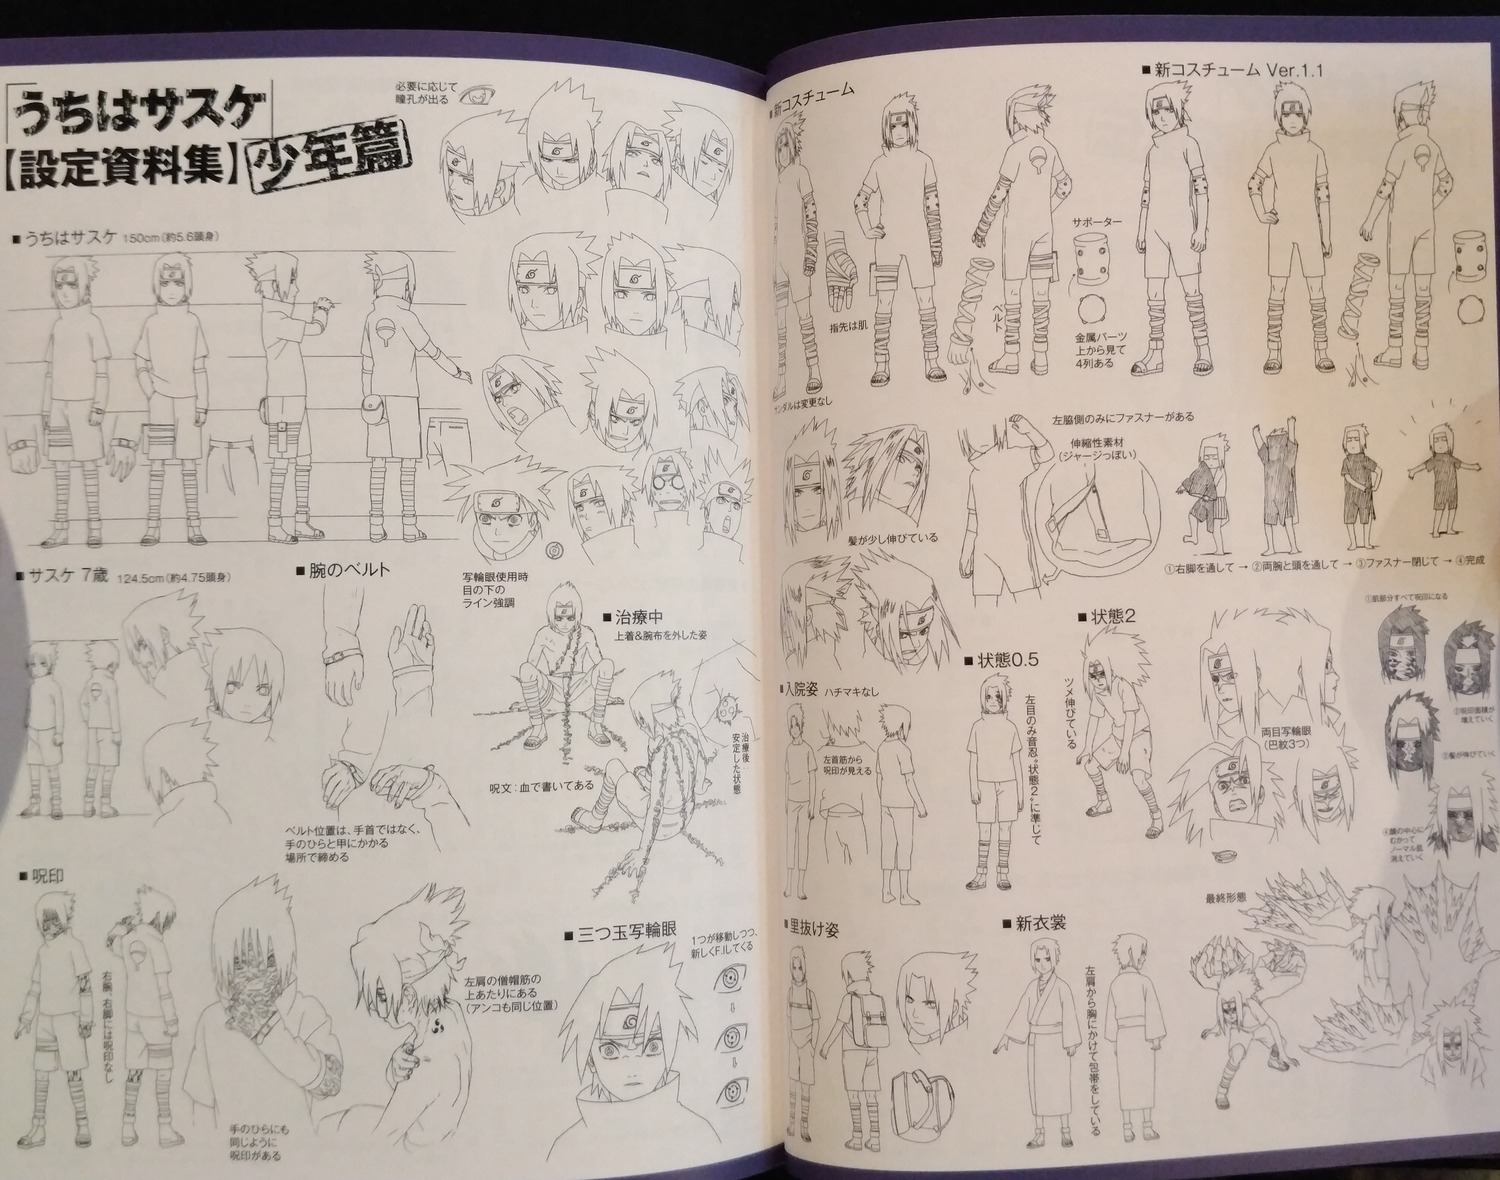 Hirofumi Suzuki Tetsuya Nishio Naruto Naruto 02 Naruto Shippuuden Character Design Production Materials Settei Sakugabooru